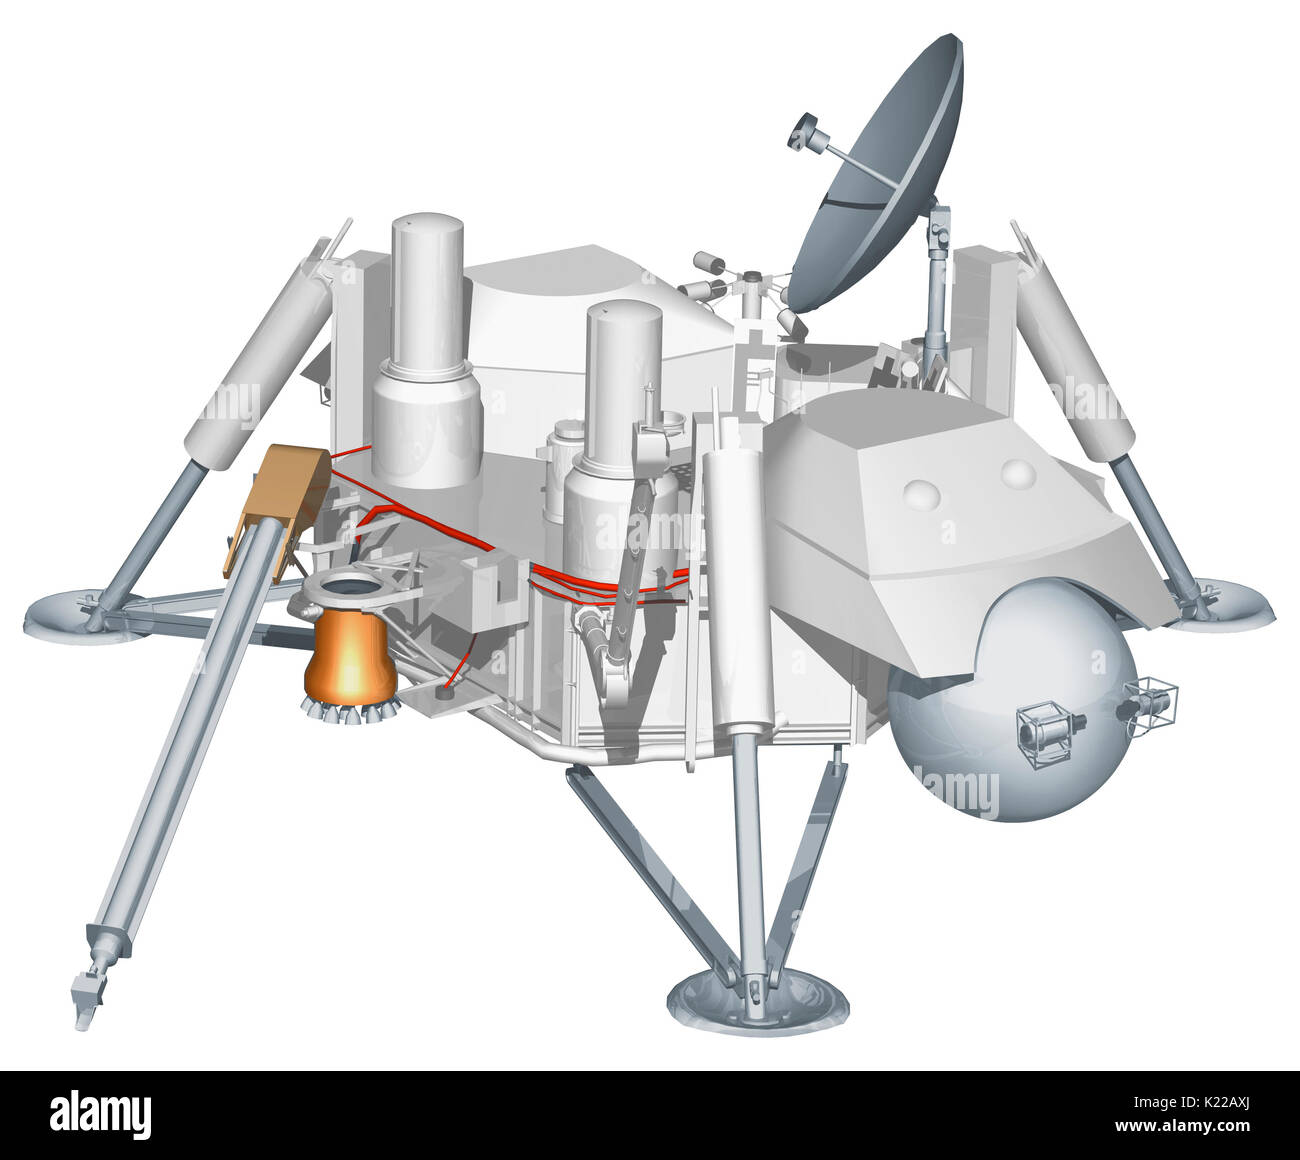 Raumfahrzeuge, die entwickelt wurden, damit Sie auf der Oberfläche des Mars zu berühren, um es zu studieren. Stockfoto